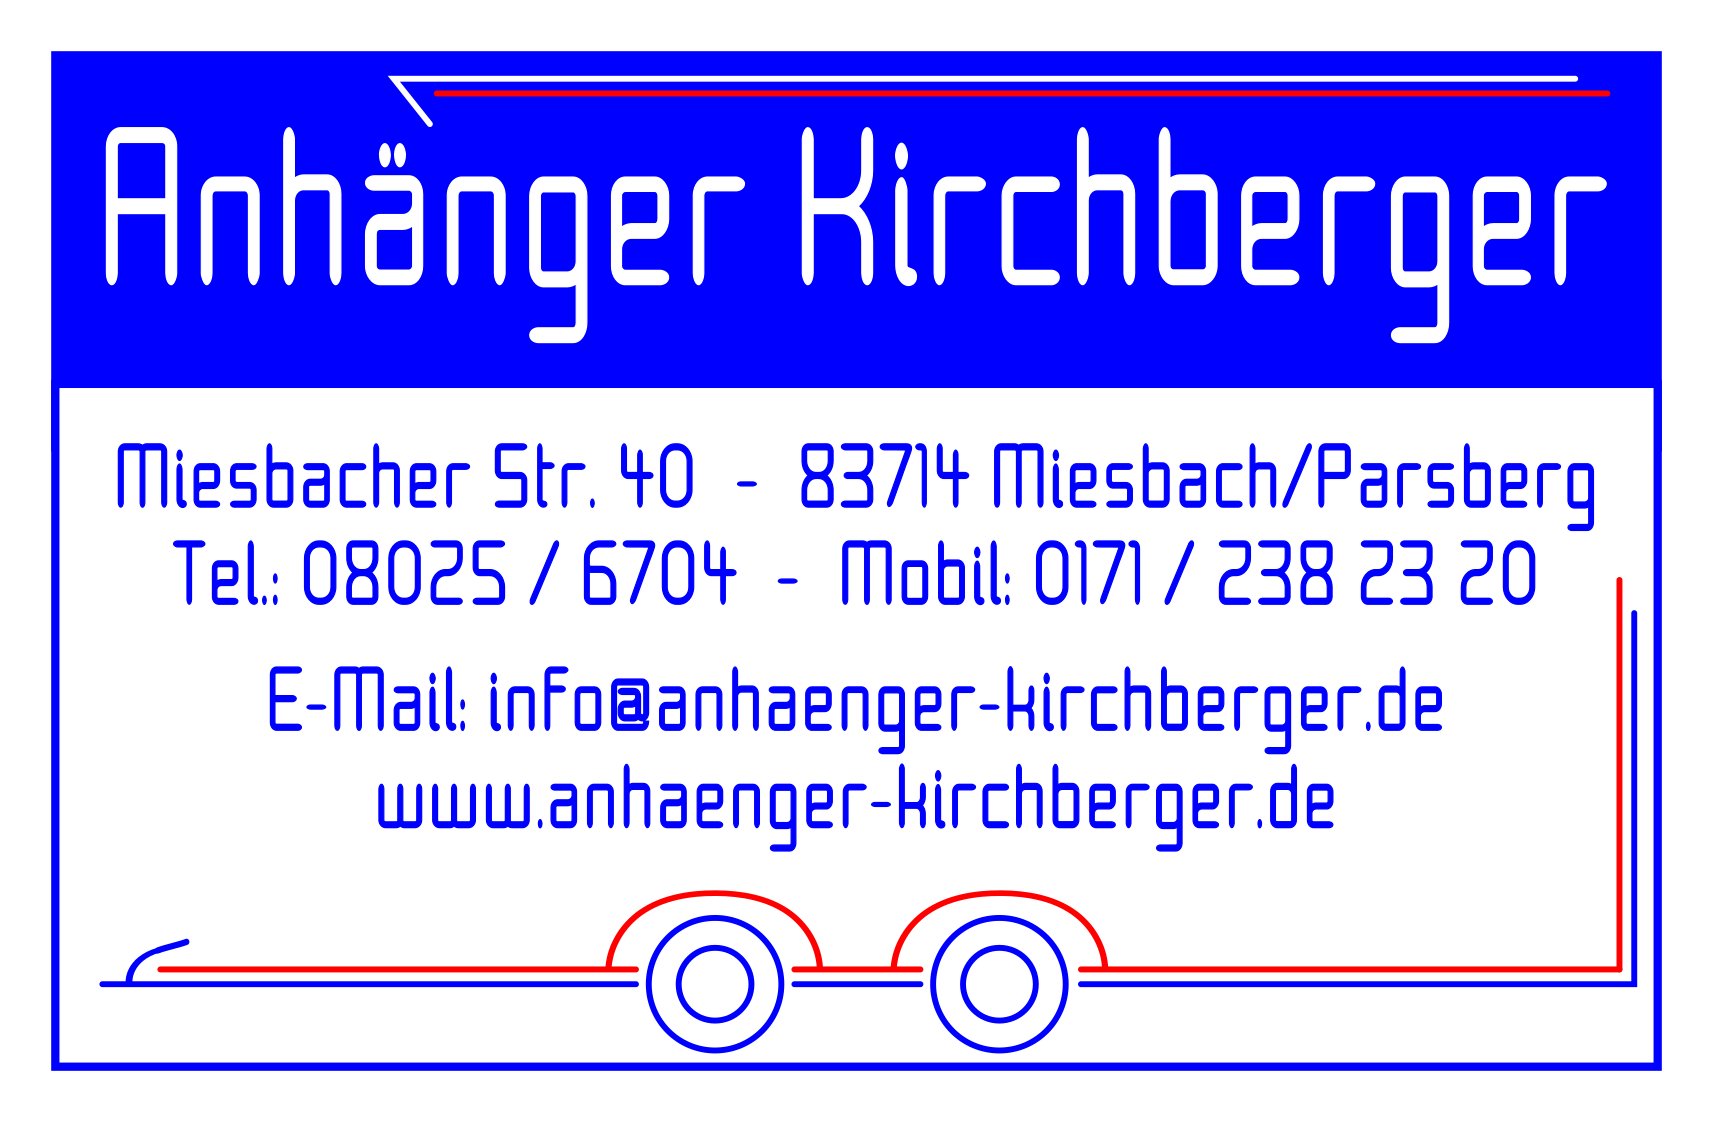 (c) Anhaenger-kirchberger.de